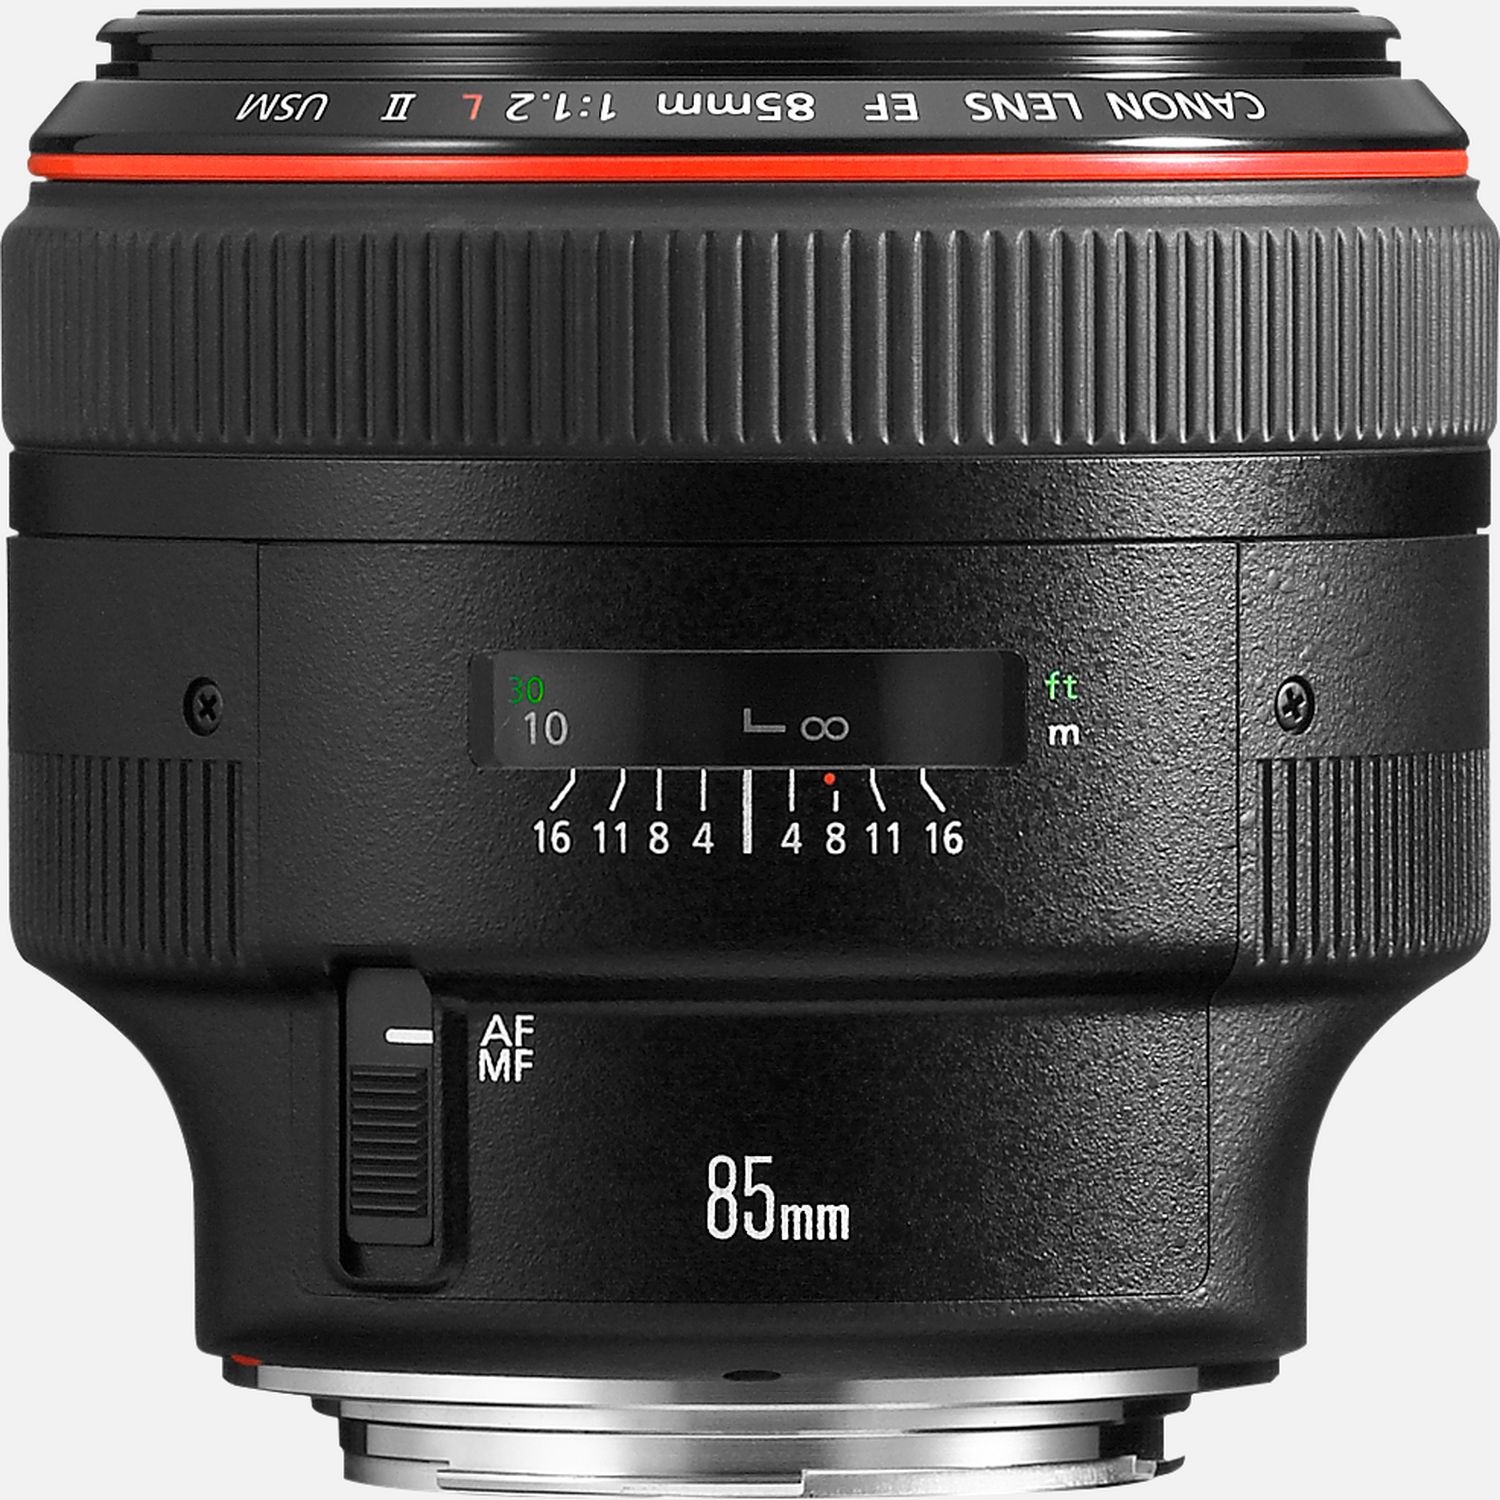 Image of Obiettivo Canon EF 85mm f/1.2L II USM